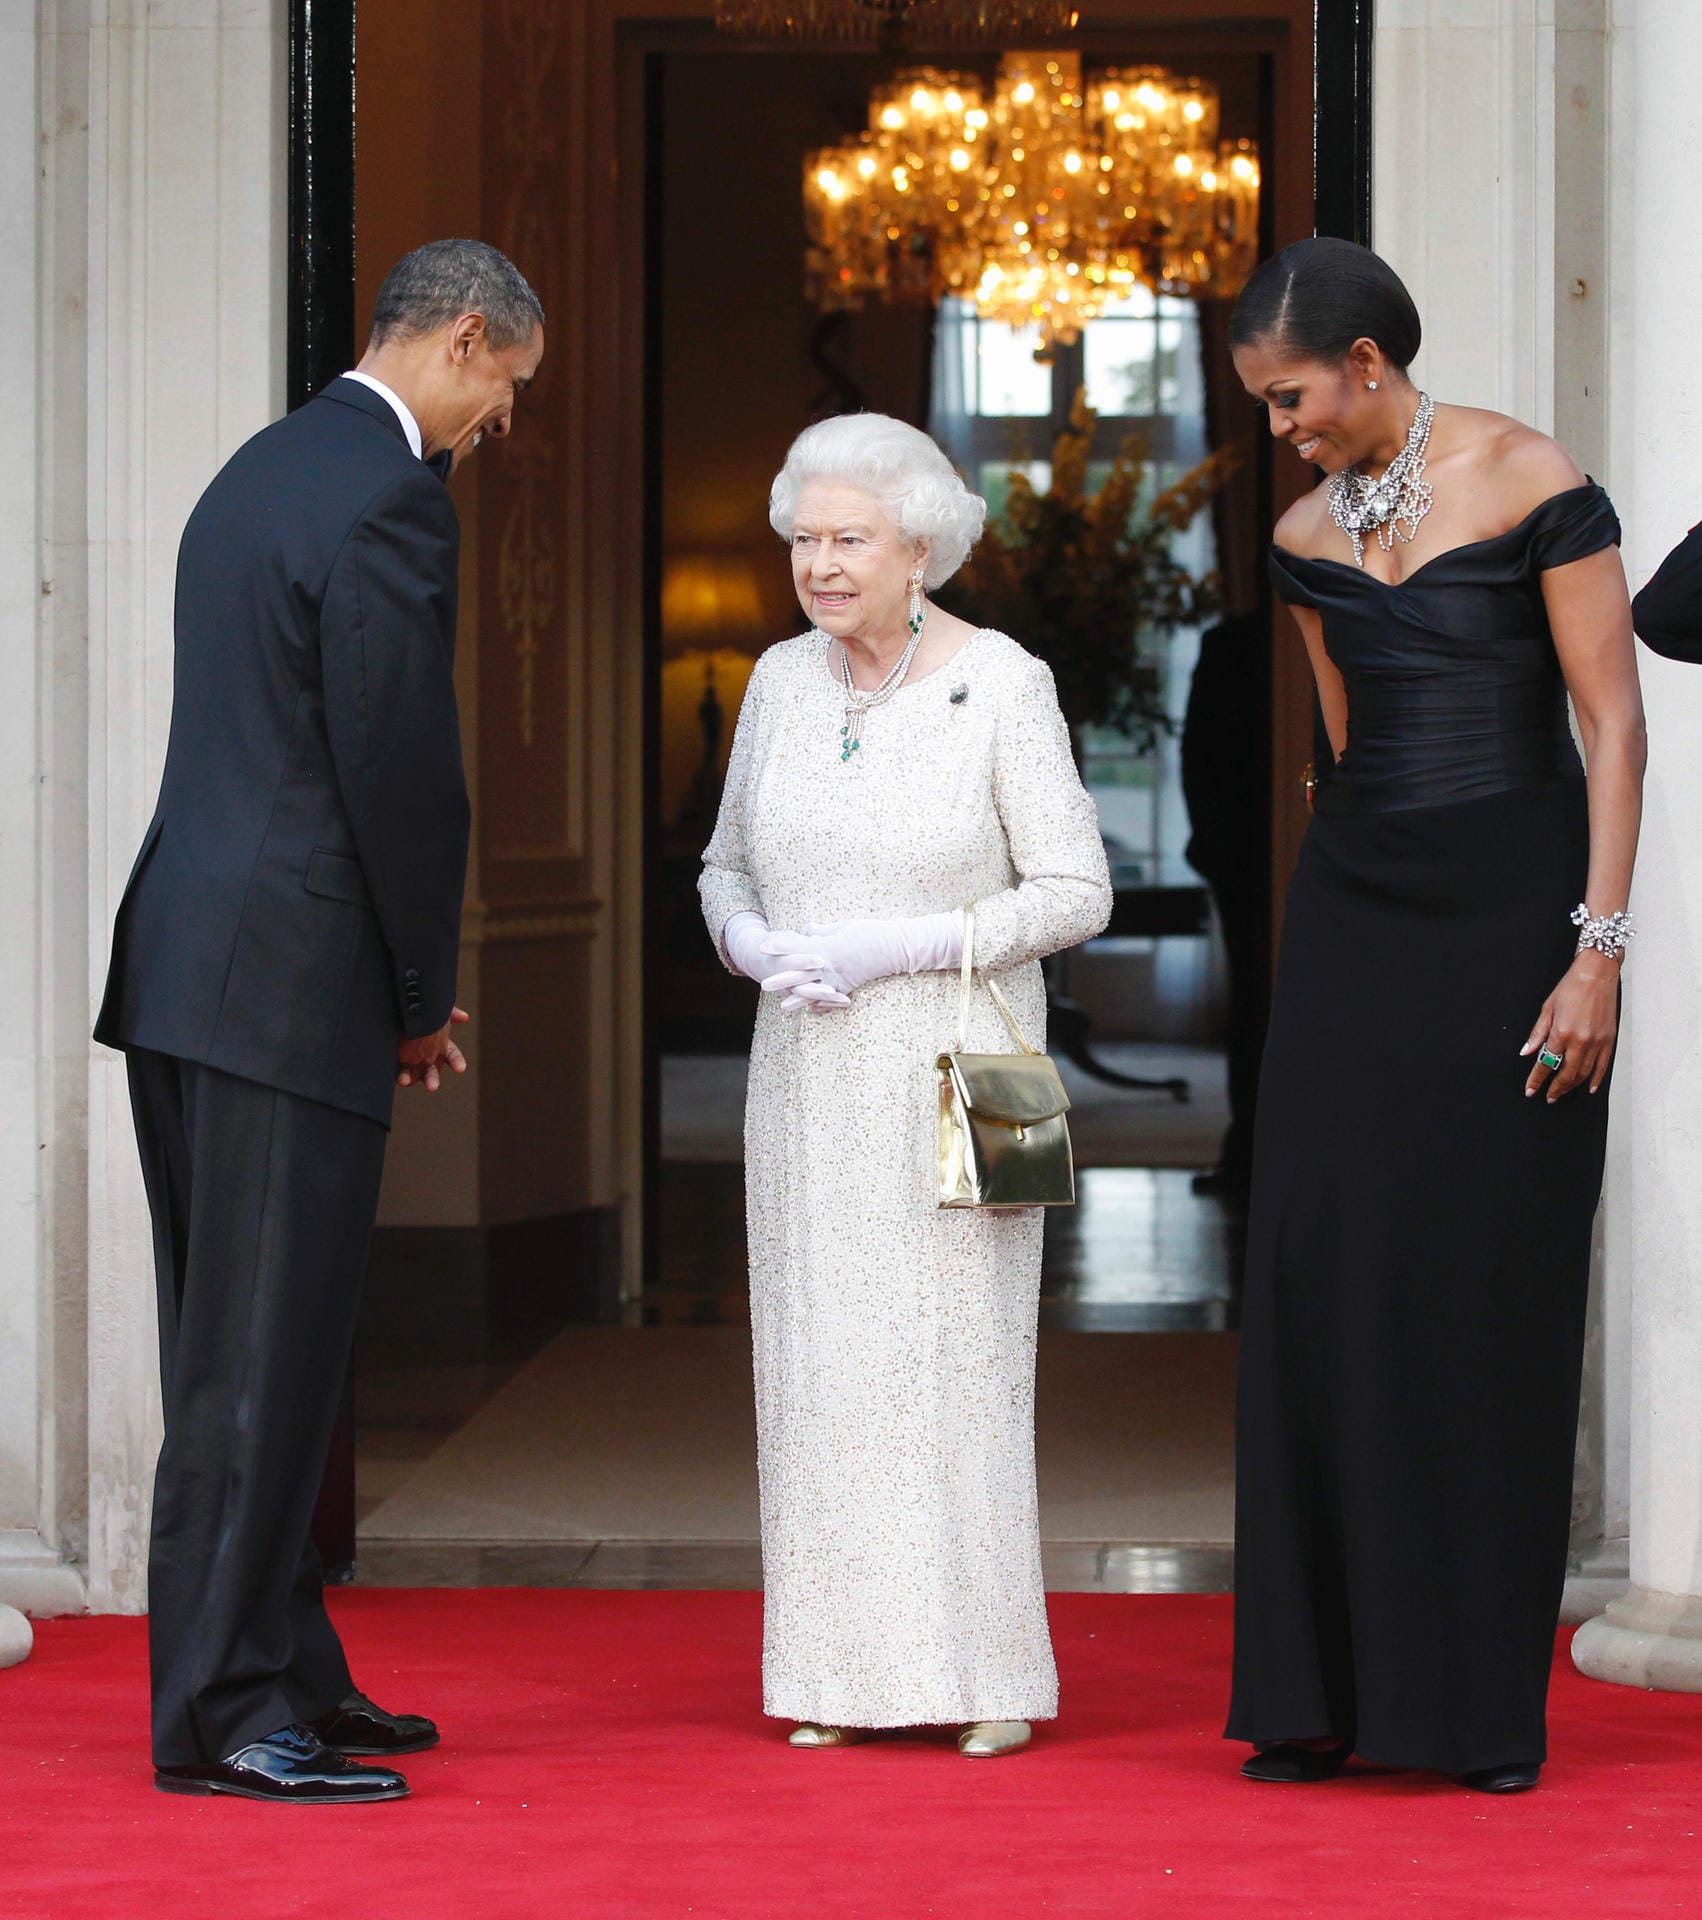 Zuletzt besuchte US-Präsident Barack Obama die Queen im Jahr 2011.